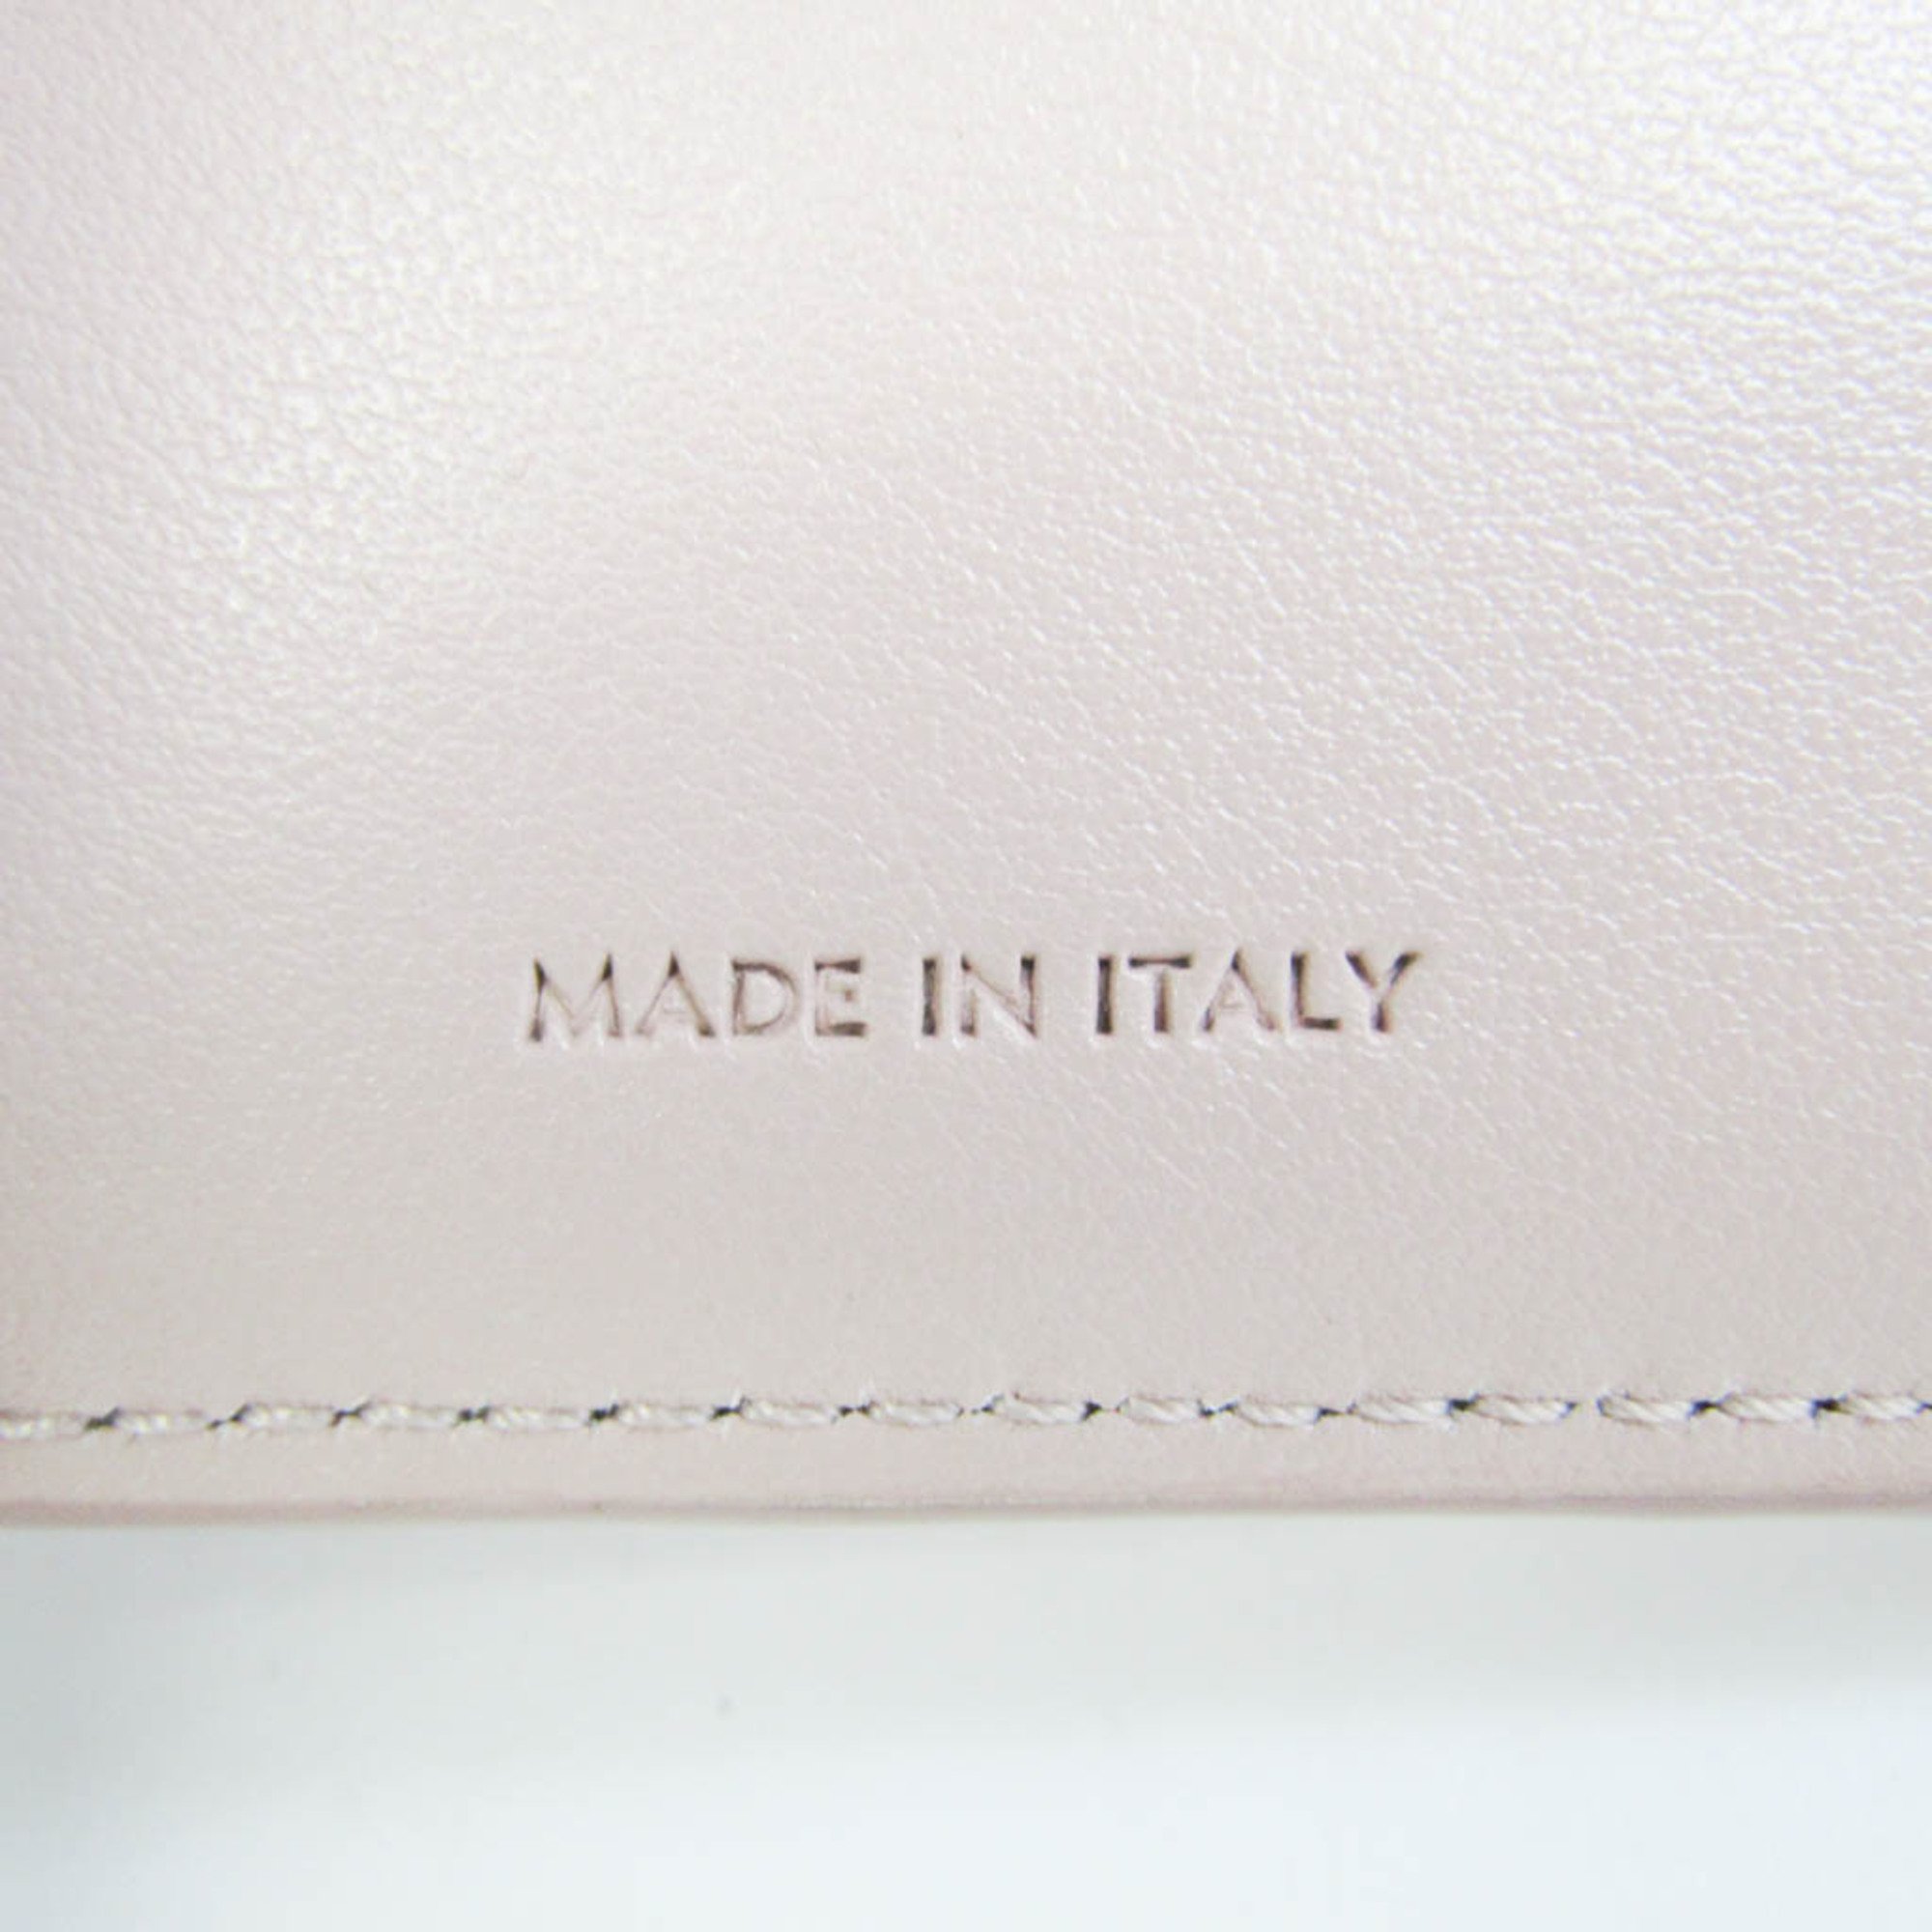 Celine Folded Compact Wallet 10E60 Women's Leather Wallet (tri-fold) Light Pink